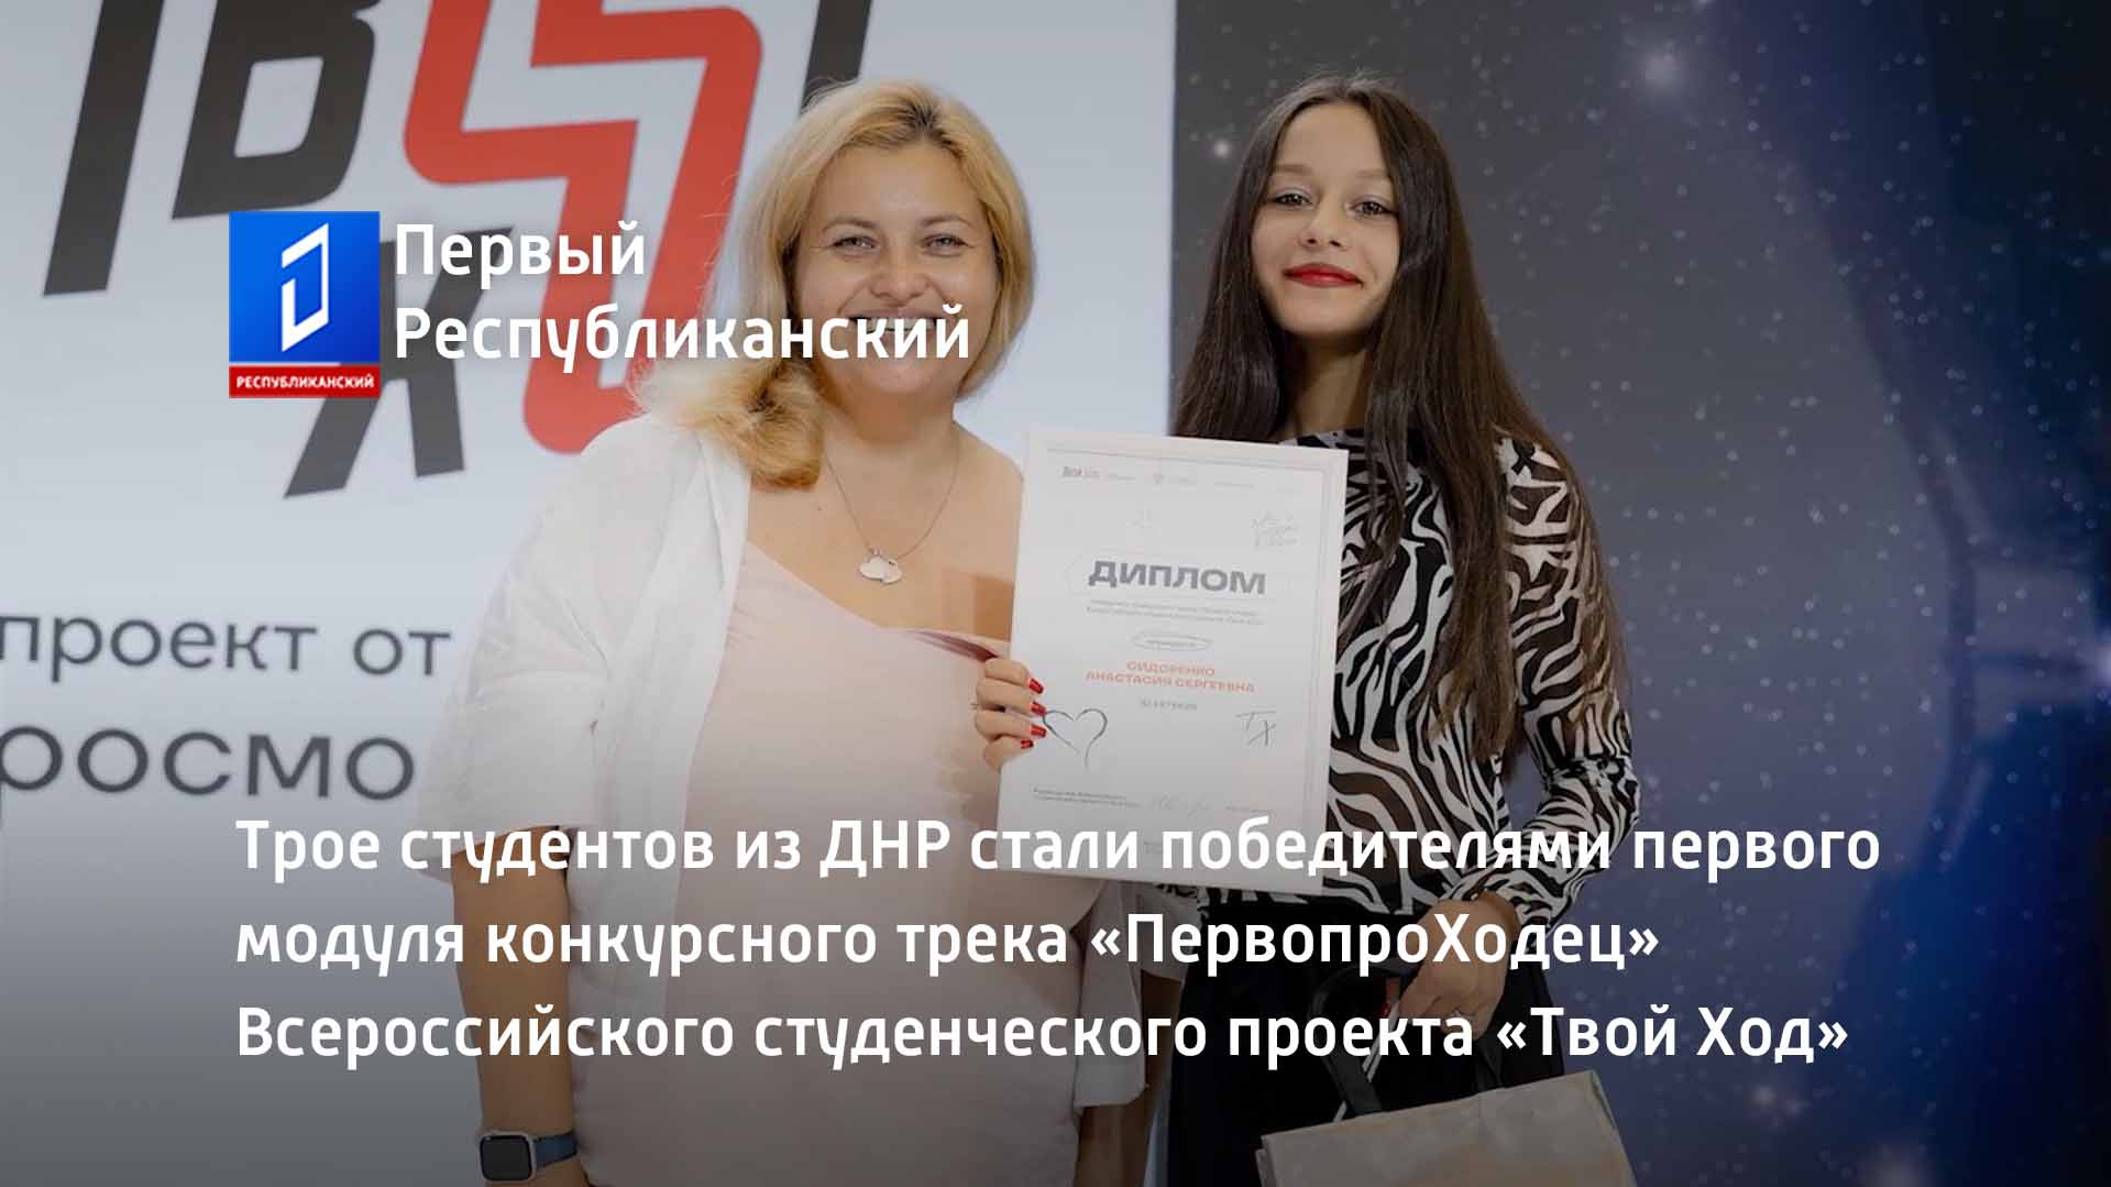 Трое студентов из ДНР стали победителями первого модуля конкурсного трека «ПервопроХодец»